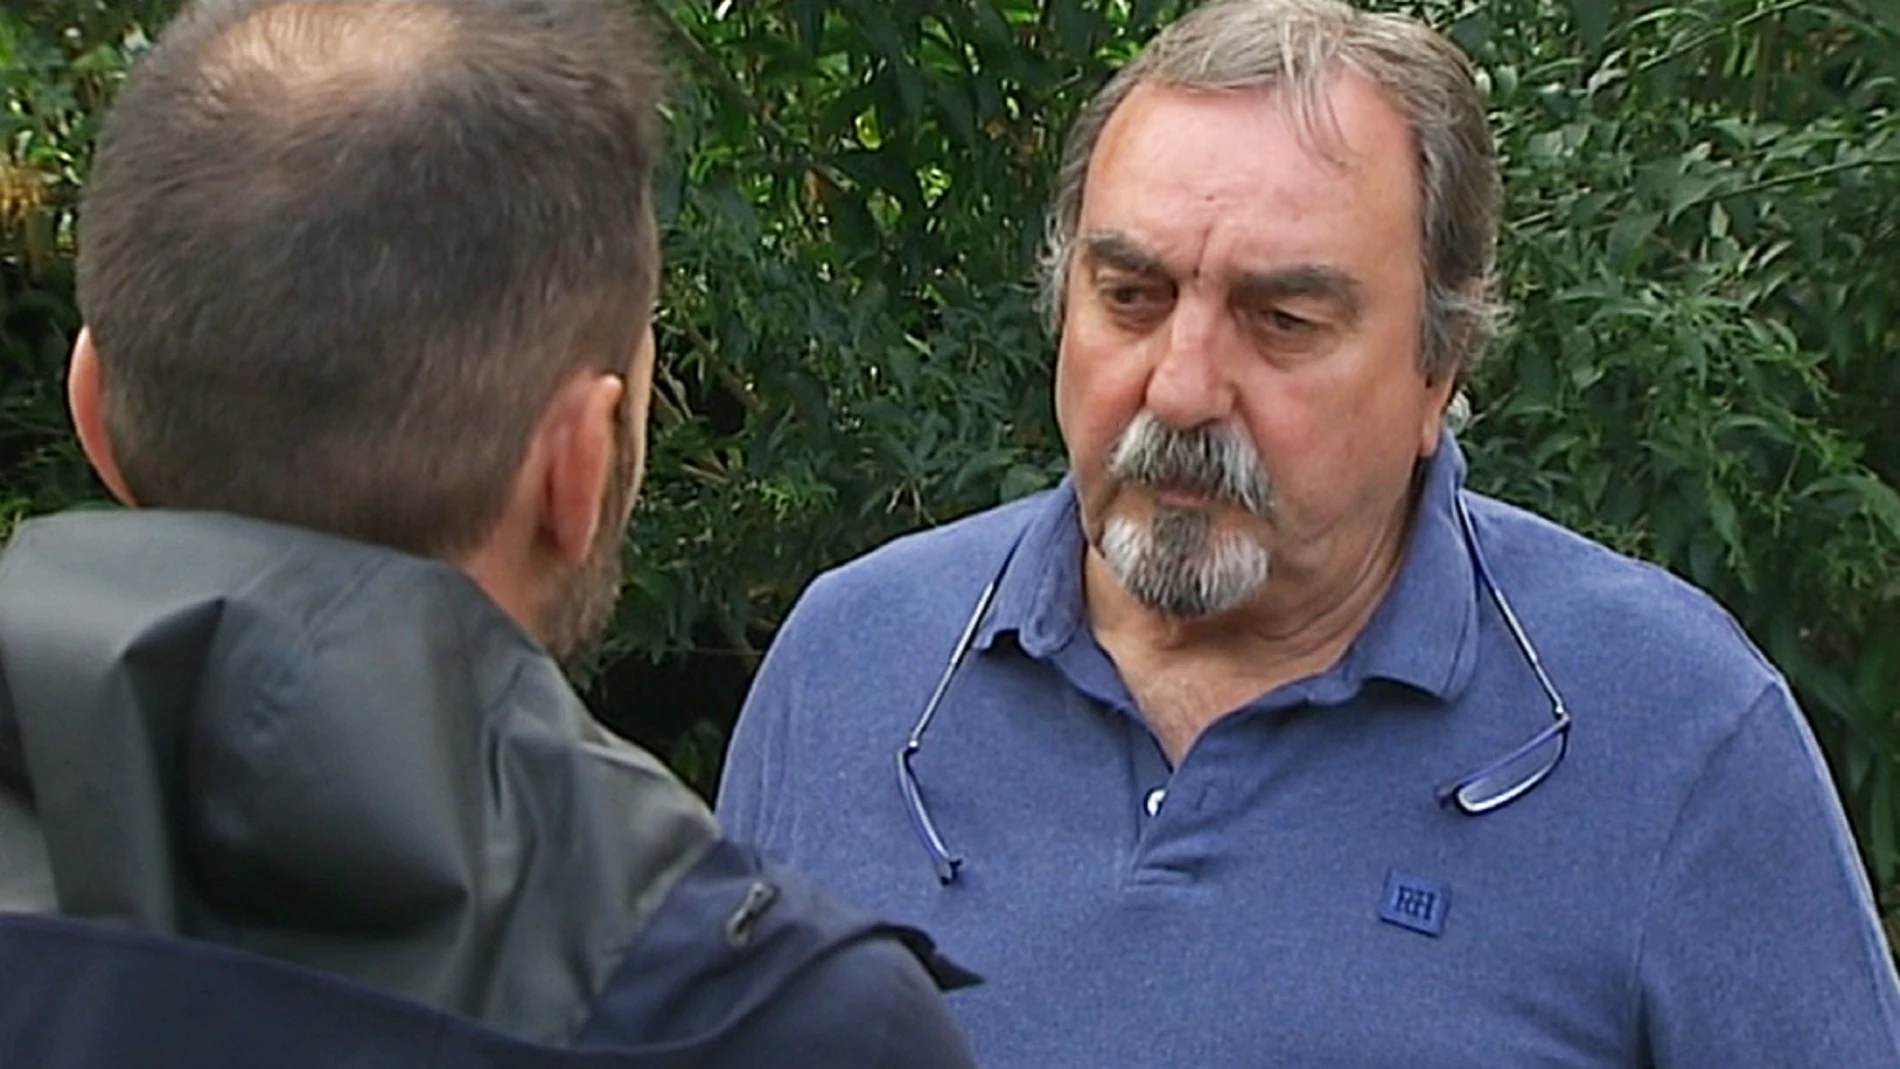 Habla el primo del hombre desaparecido en Castro Urdiales, Cantabria. 